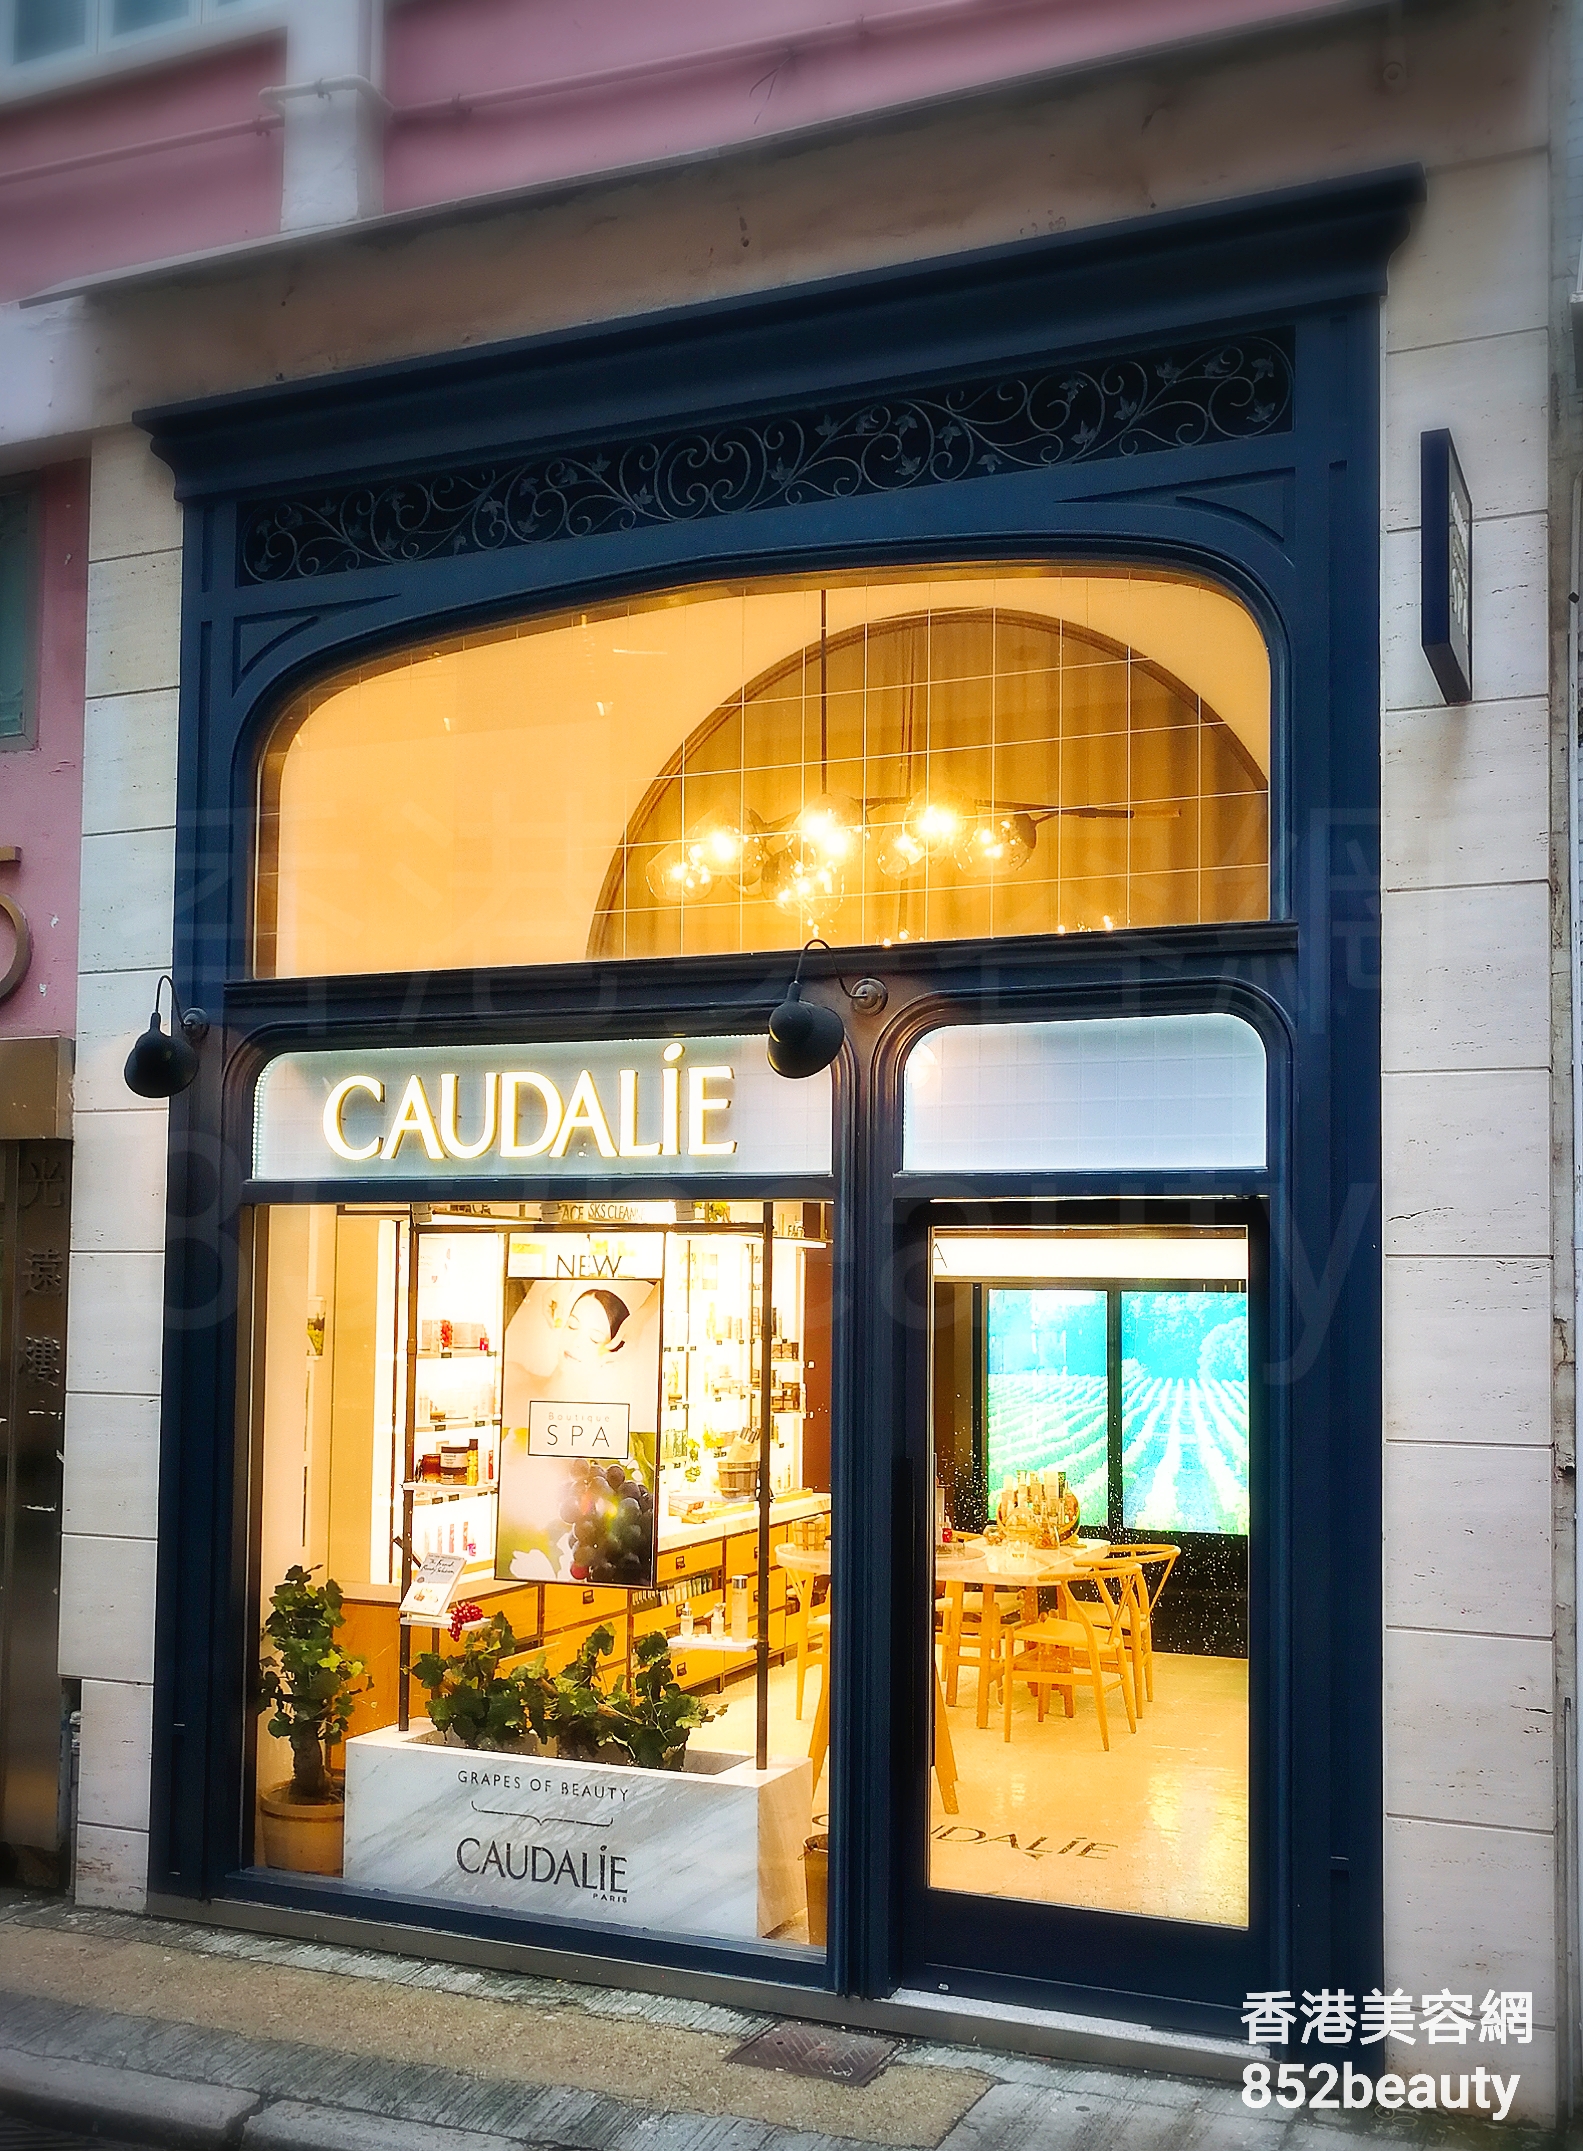 美容院: Le Spa Caudalie